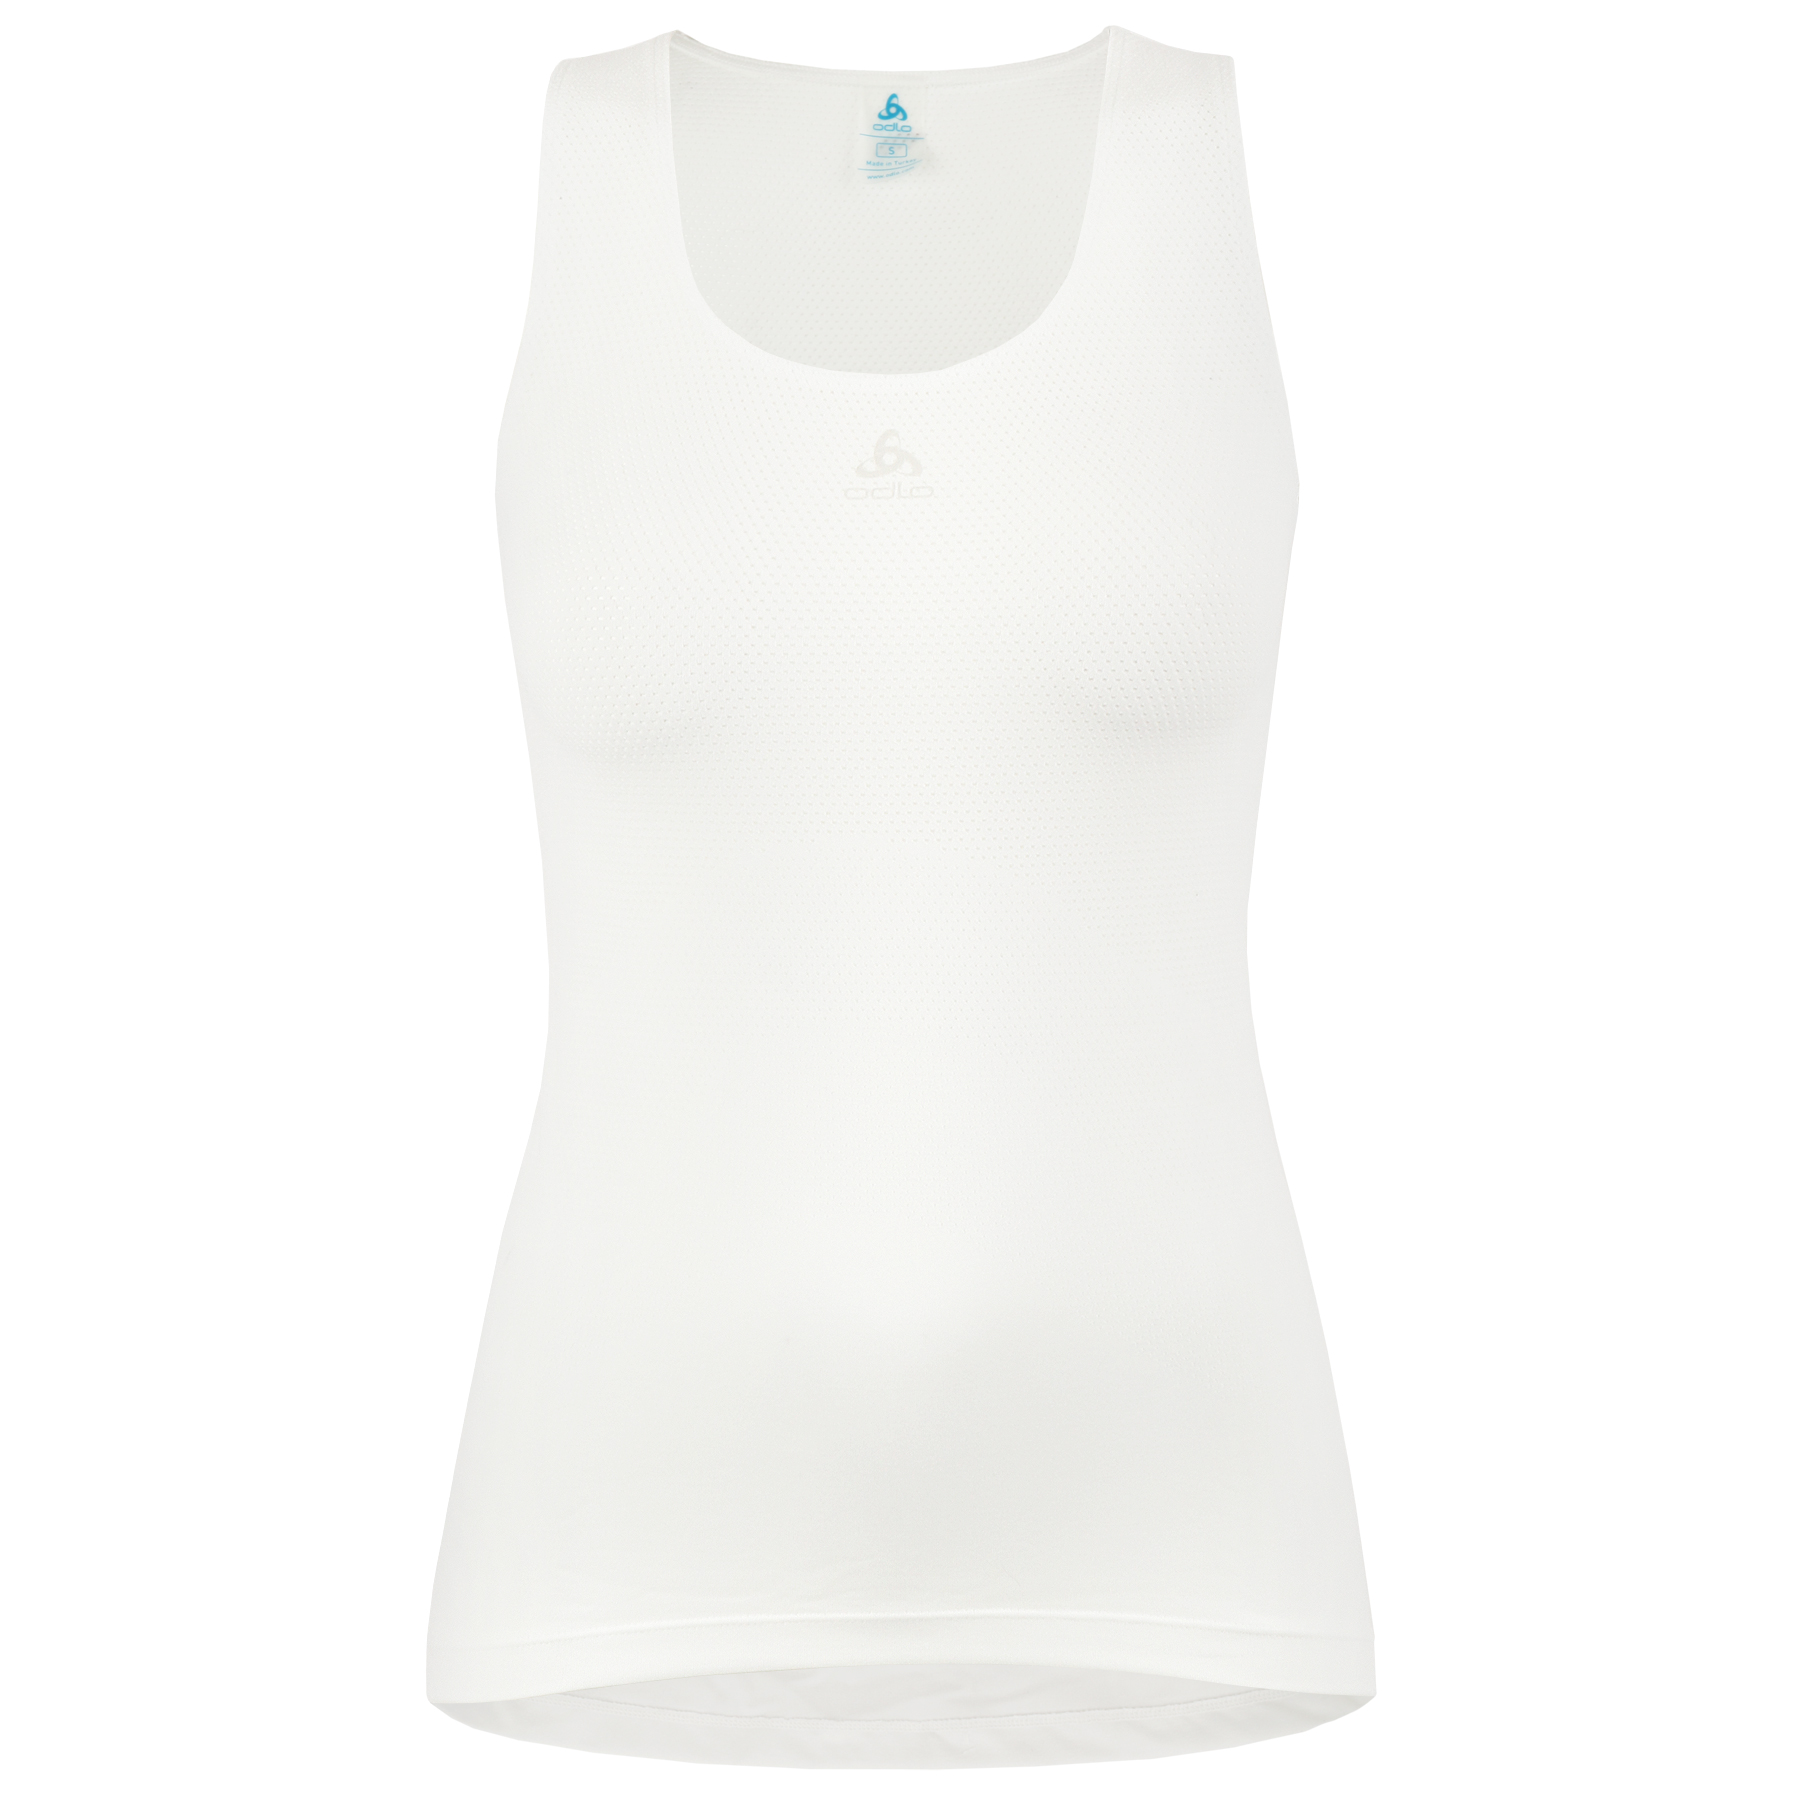 Produktbild von Odlo Zeroweight Seamless Ärmelloses Radsport Unterhemd Damen - weiß